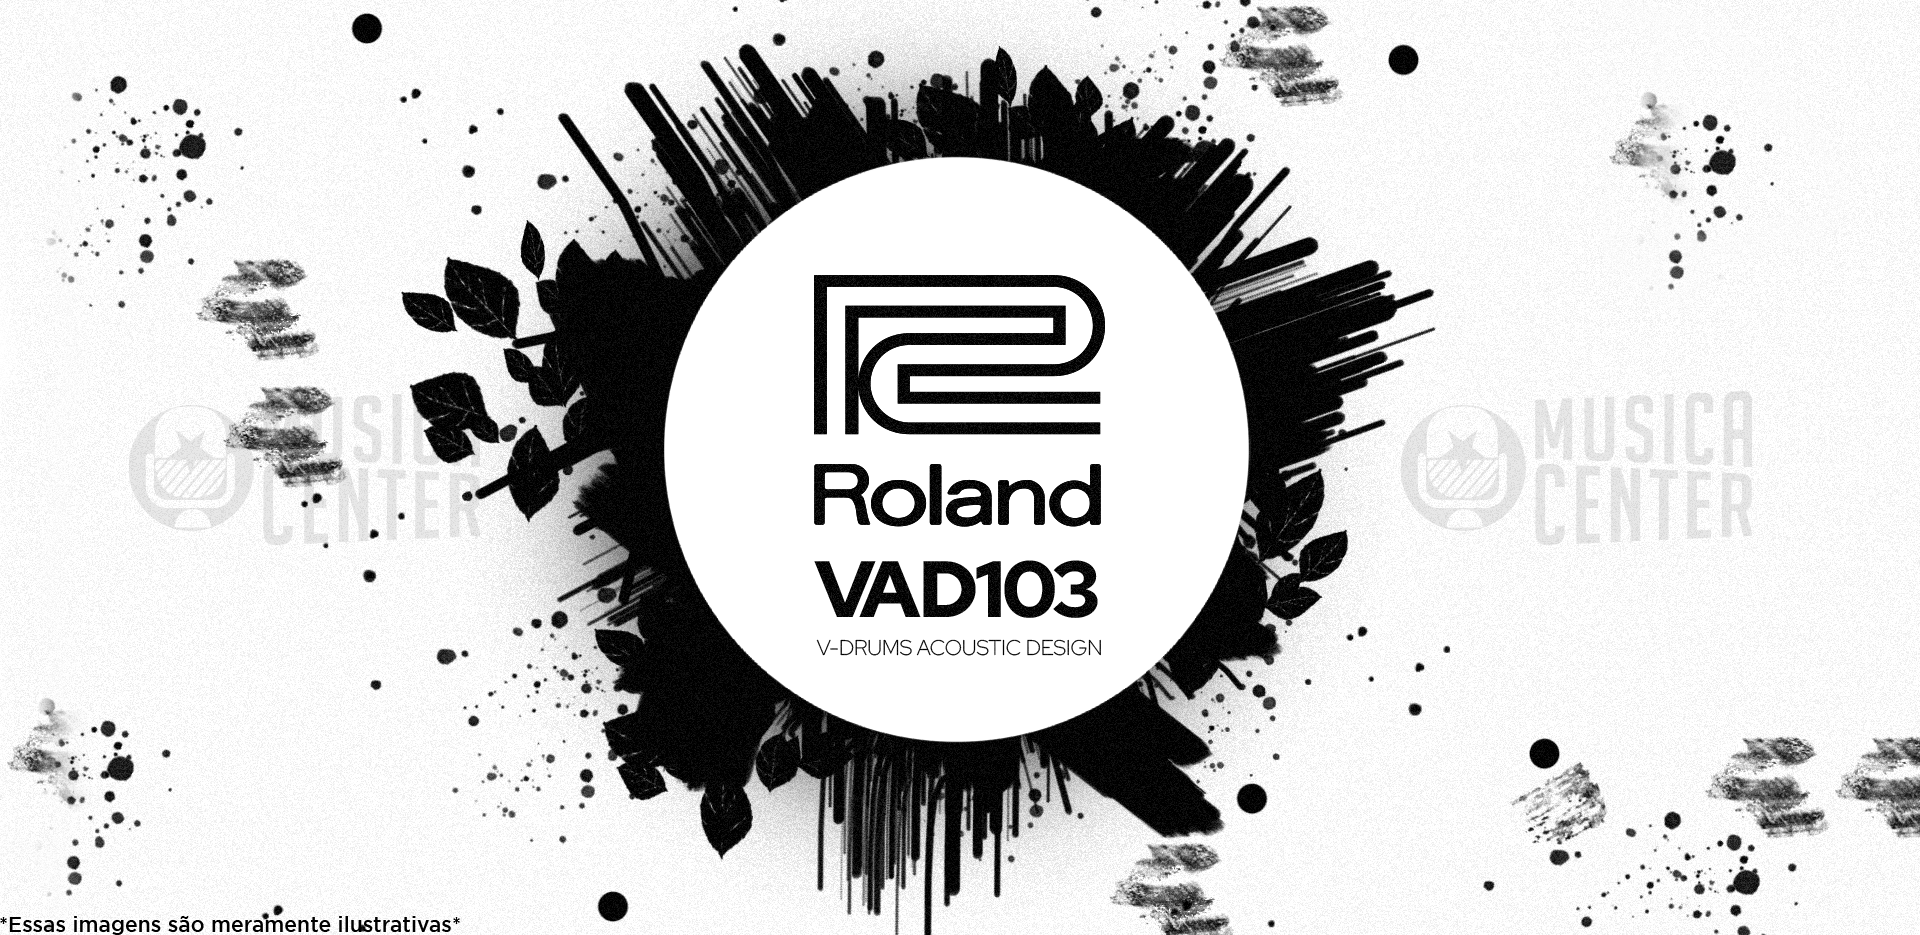 Bateria Eletrônica Roland VAD-103 Acoustic Design na Musica Center